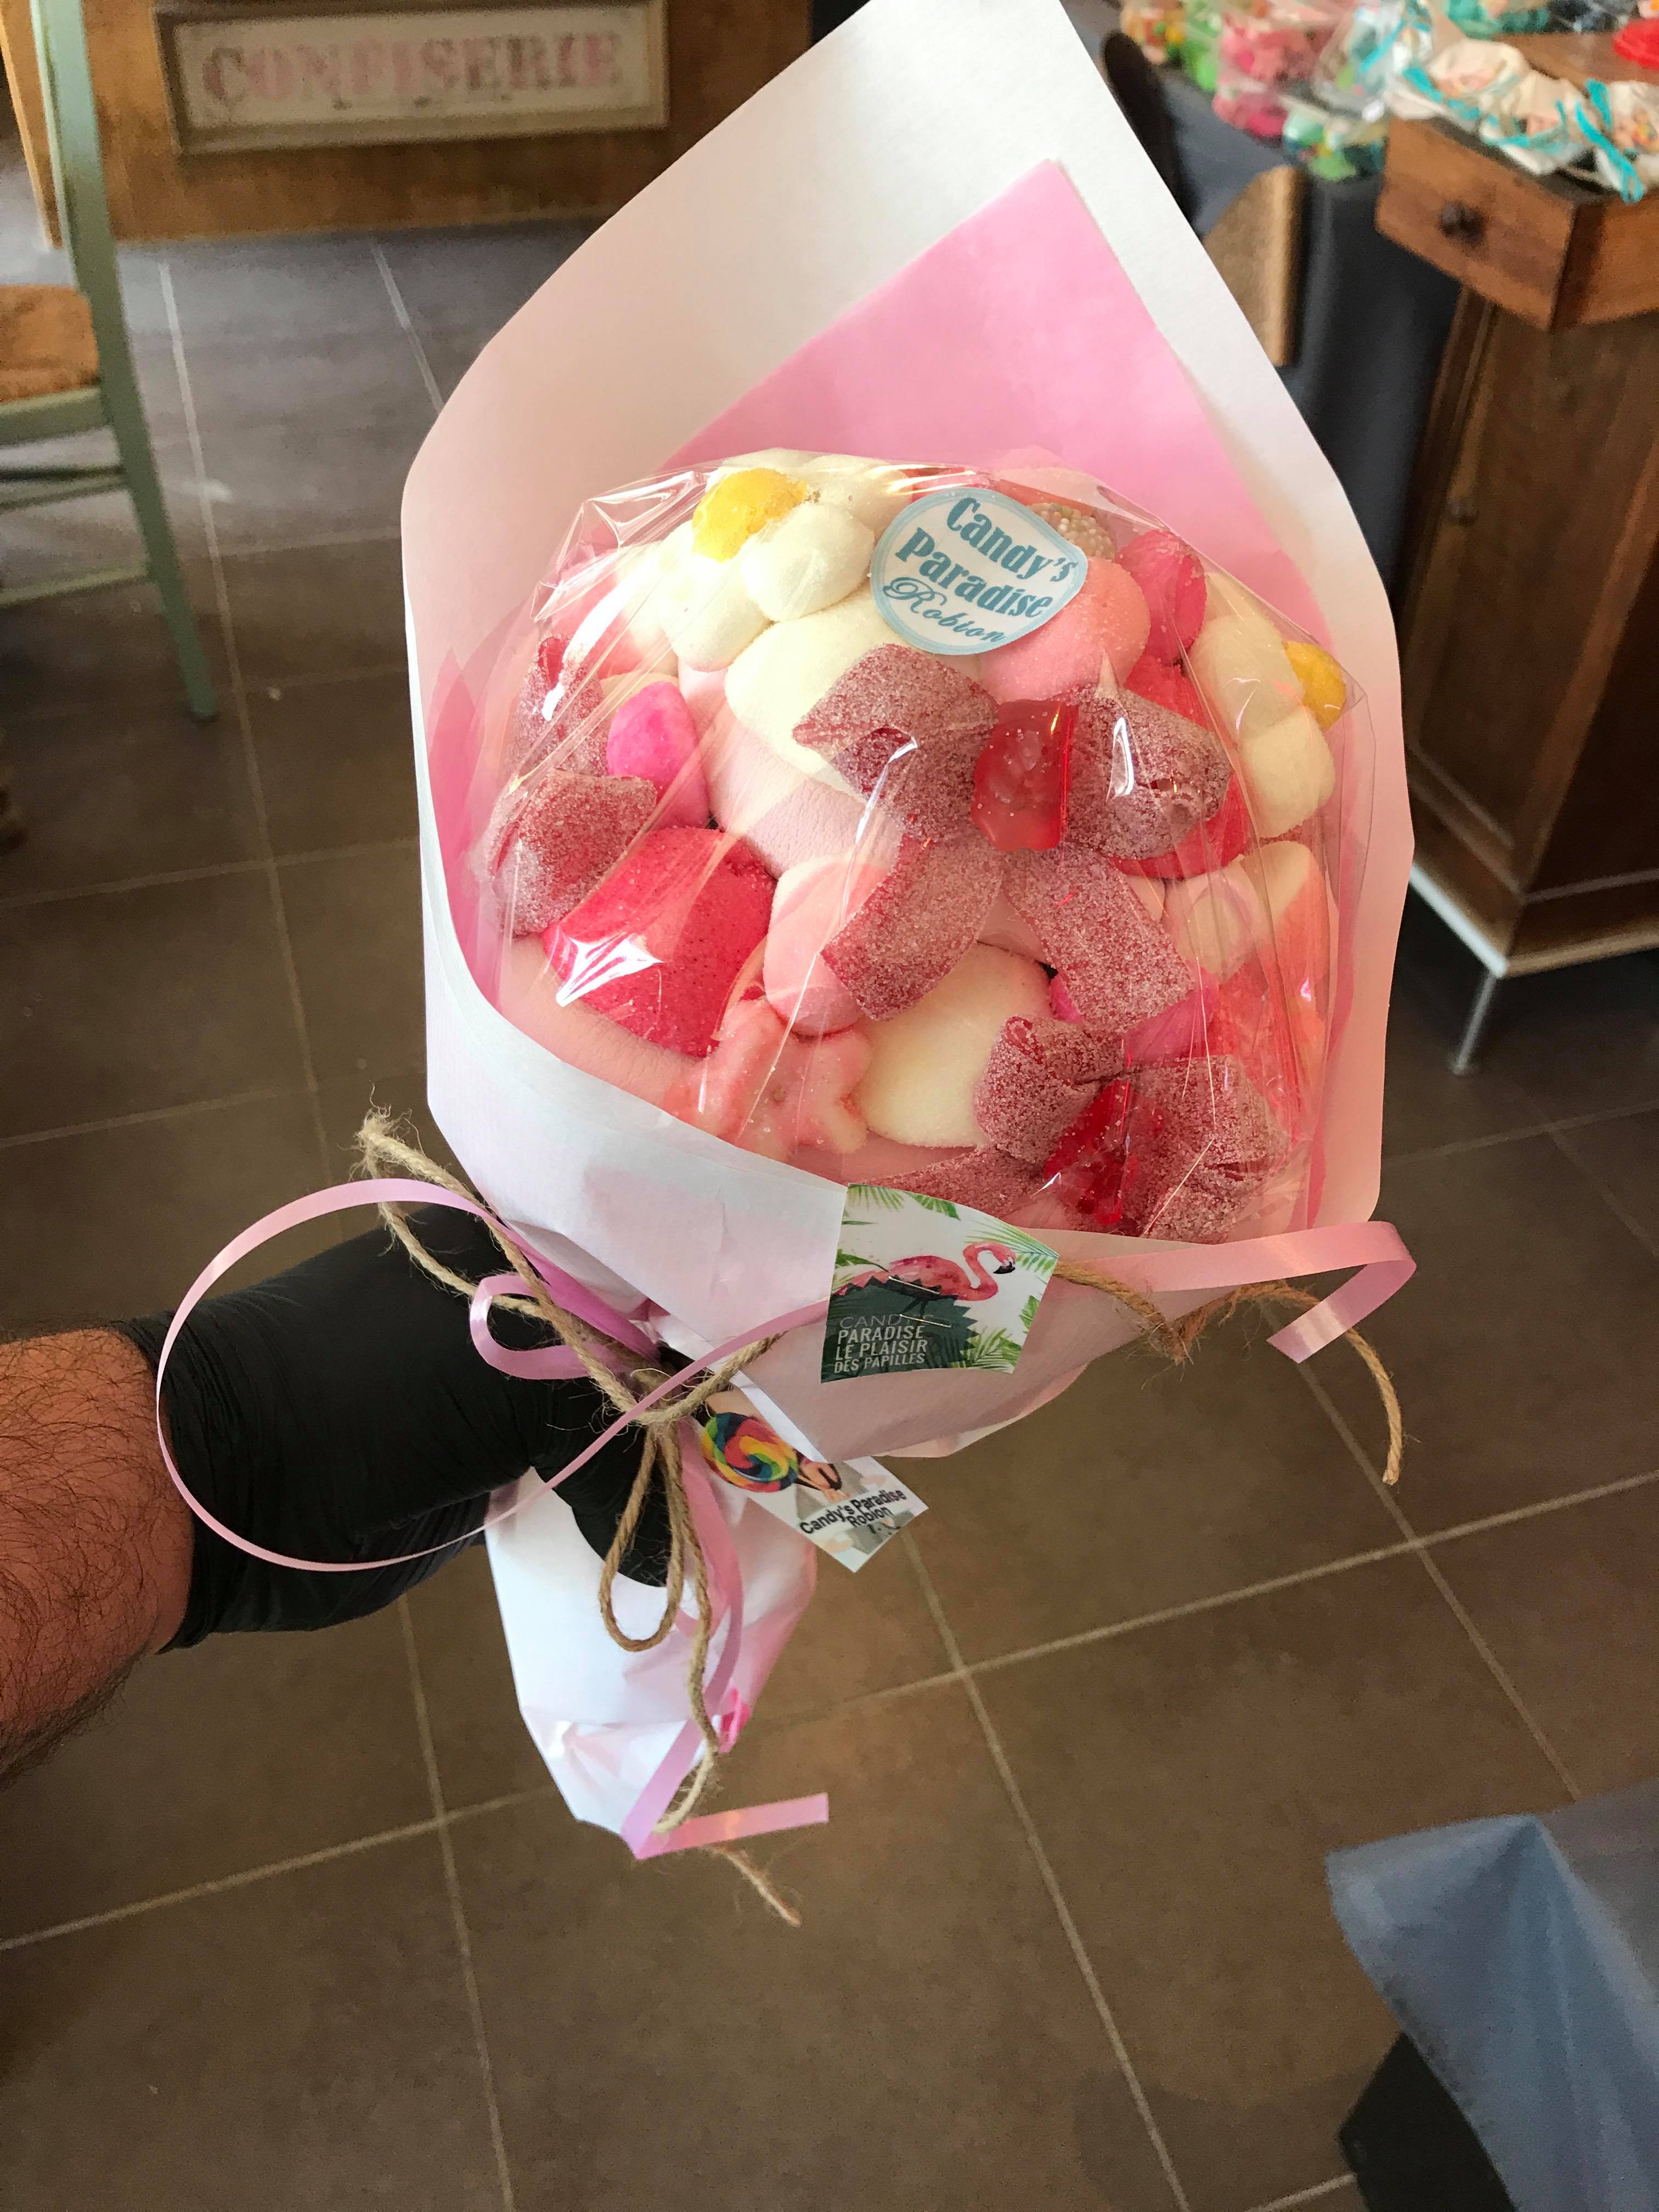 Bouquets de Bonbons pour la Saint-Valentin